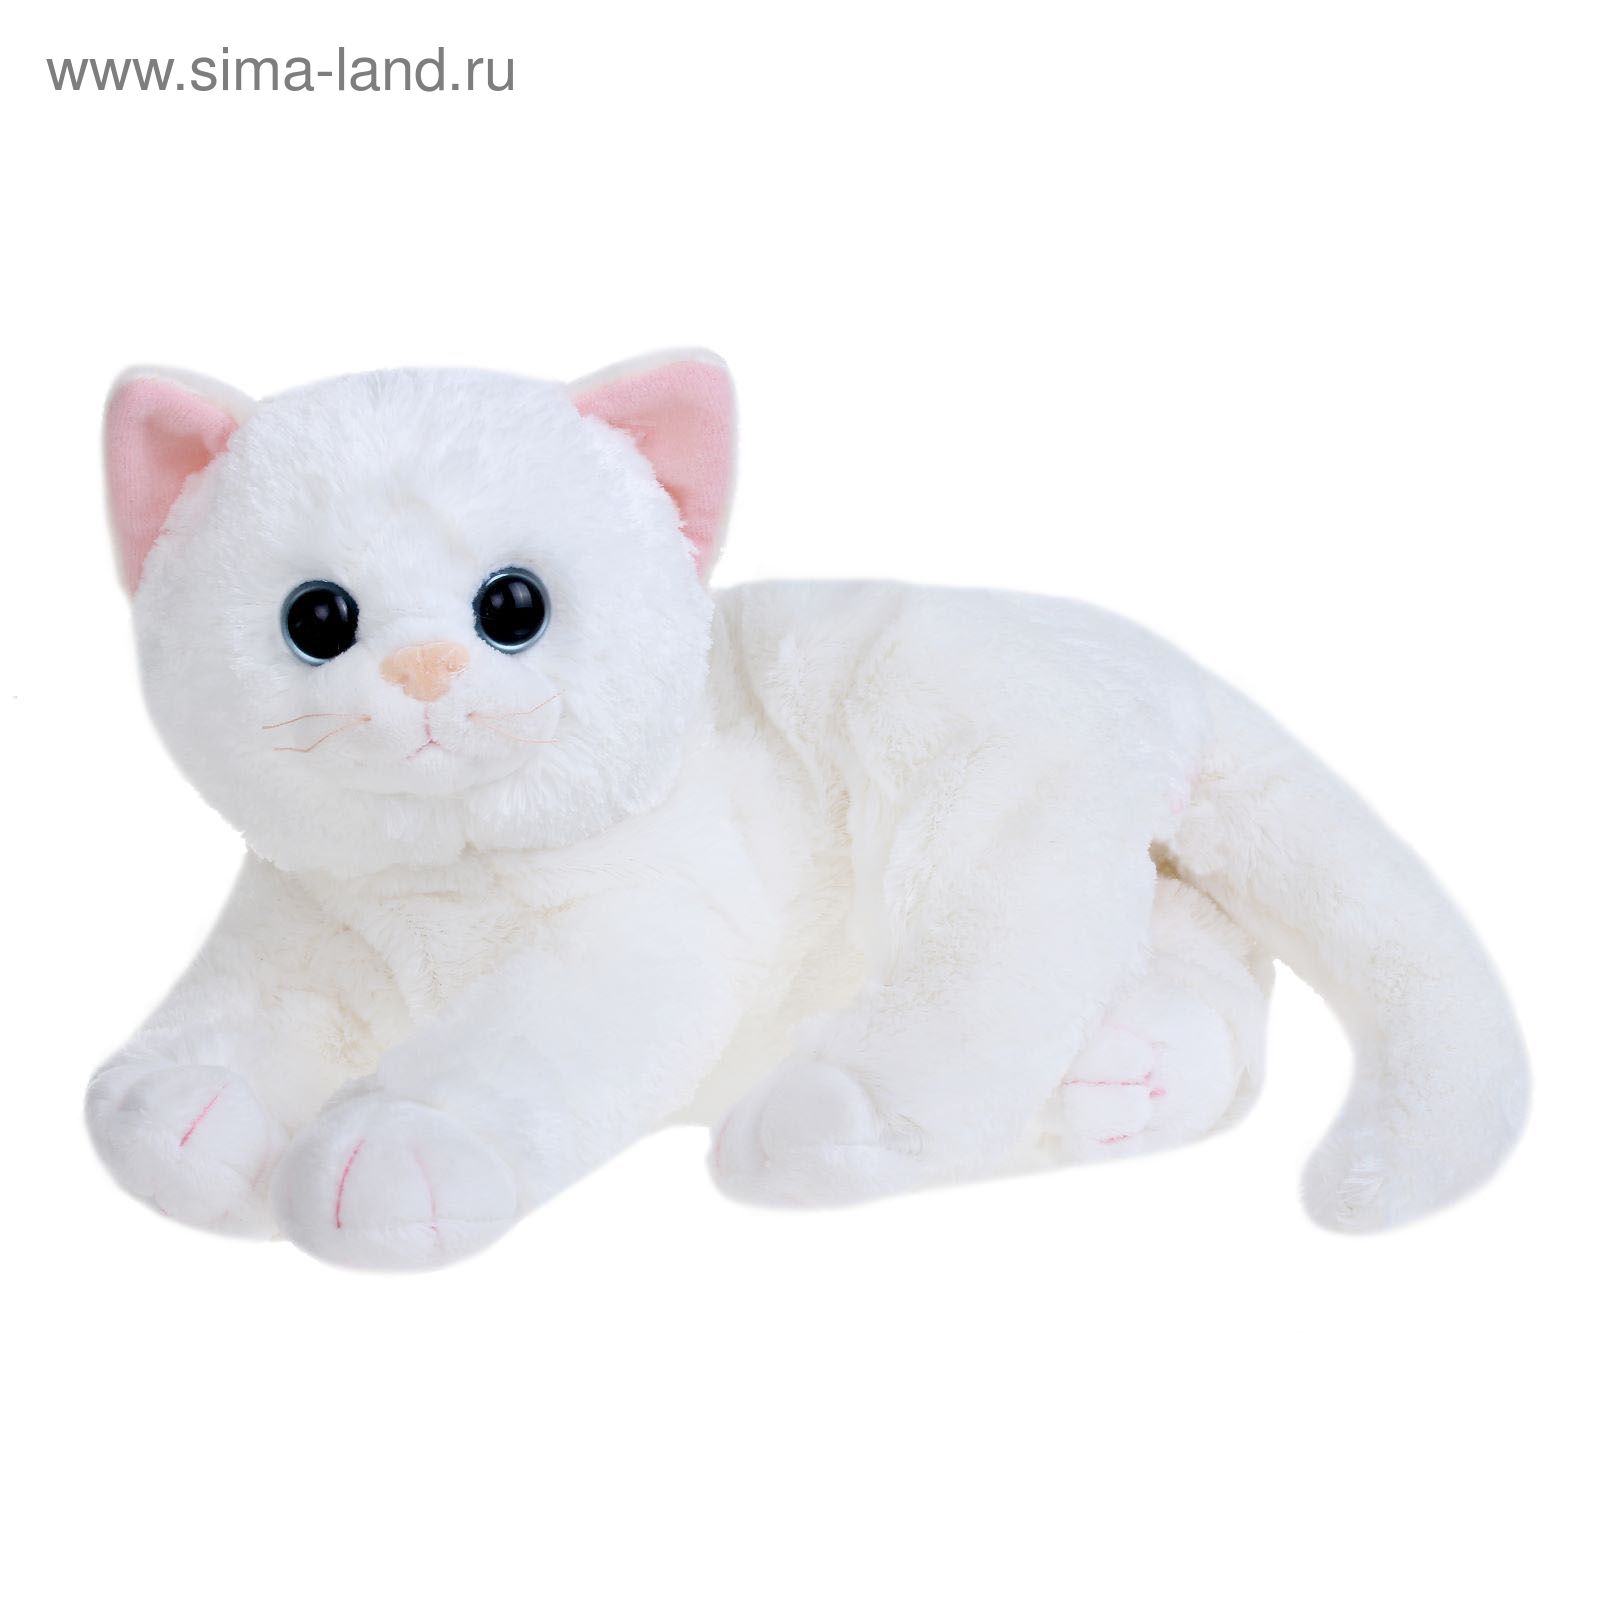 Кошка мягкая купить. Мягкая игрушка кошка. Кошка белая игрушка. Белый котенок игрушка.